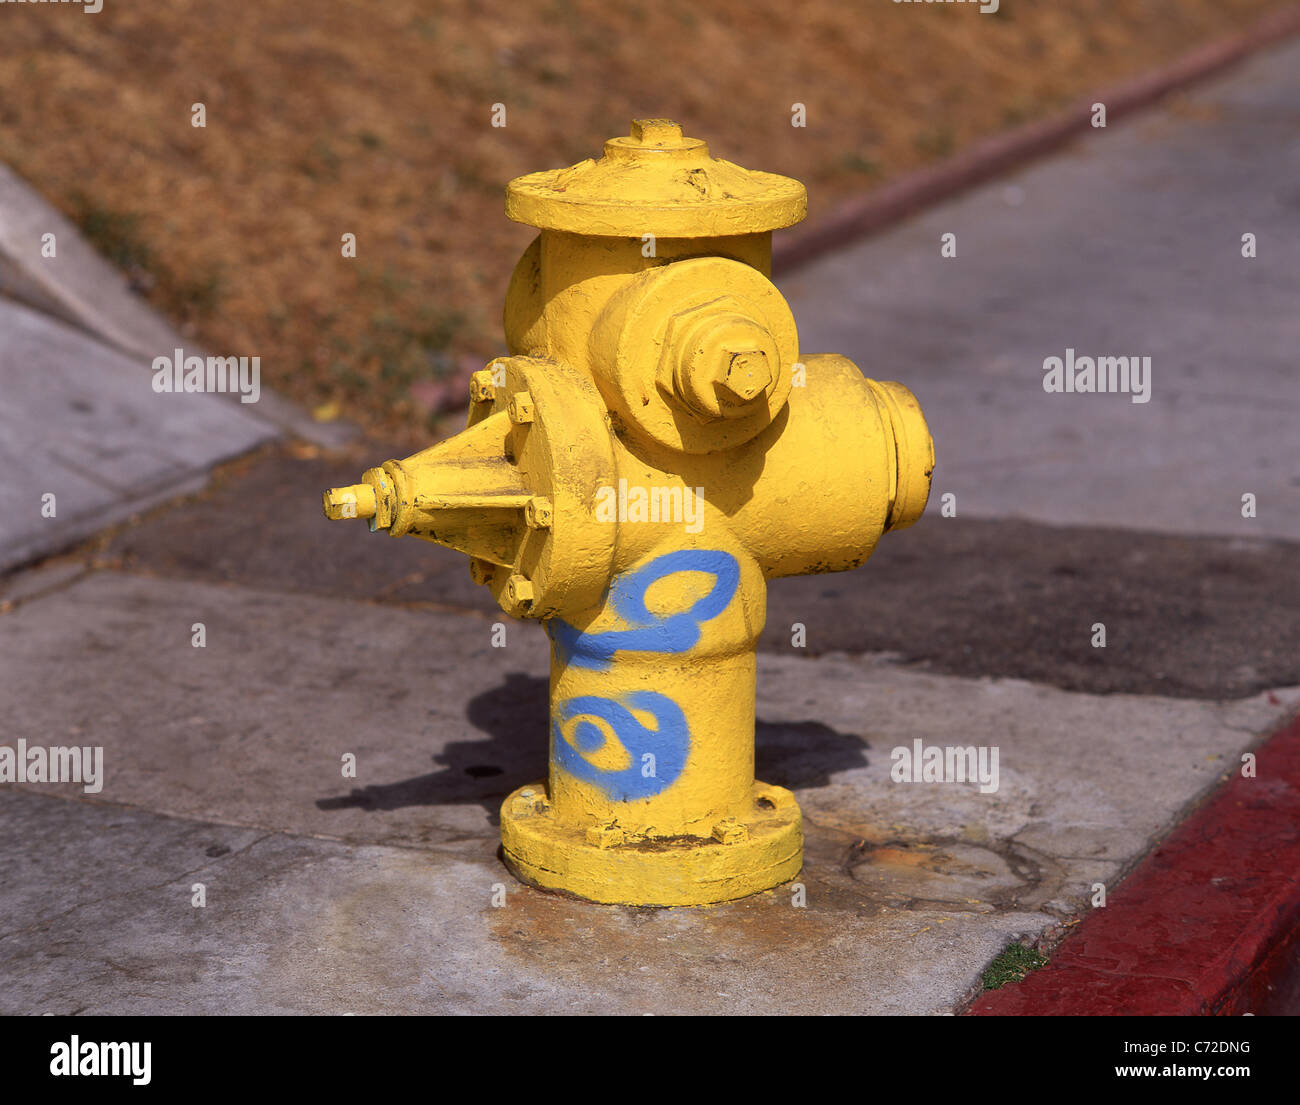 Hidrante amarillo sobre la acera, San Francisco, California, Estados Unidos de América Foto de stock